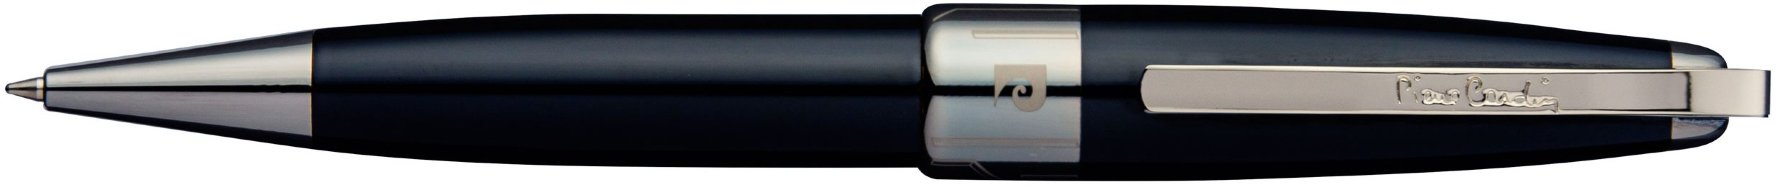 Шариковая ручка Pierre Cardin Progress с флешкой 8 Gb, черный лак